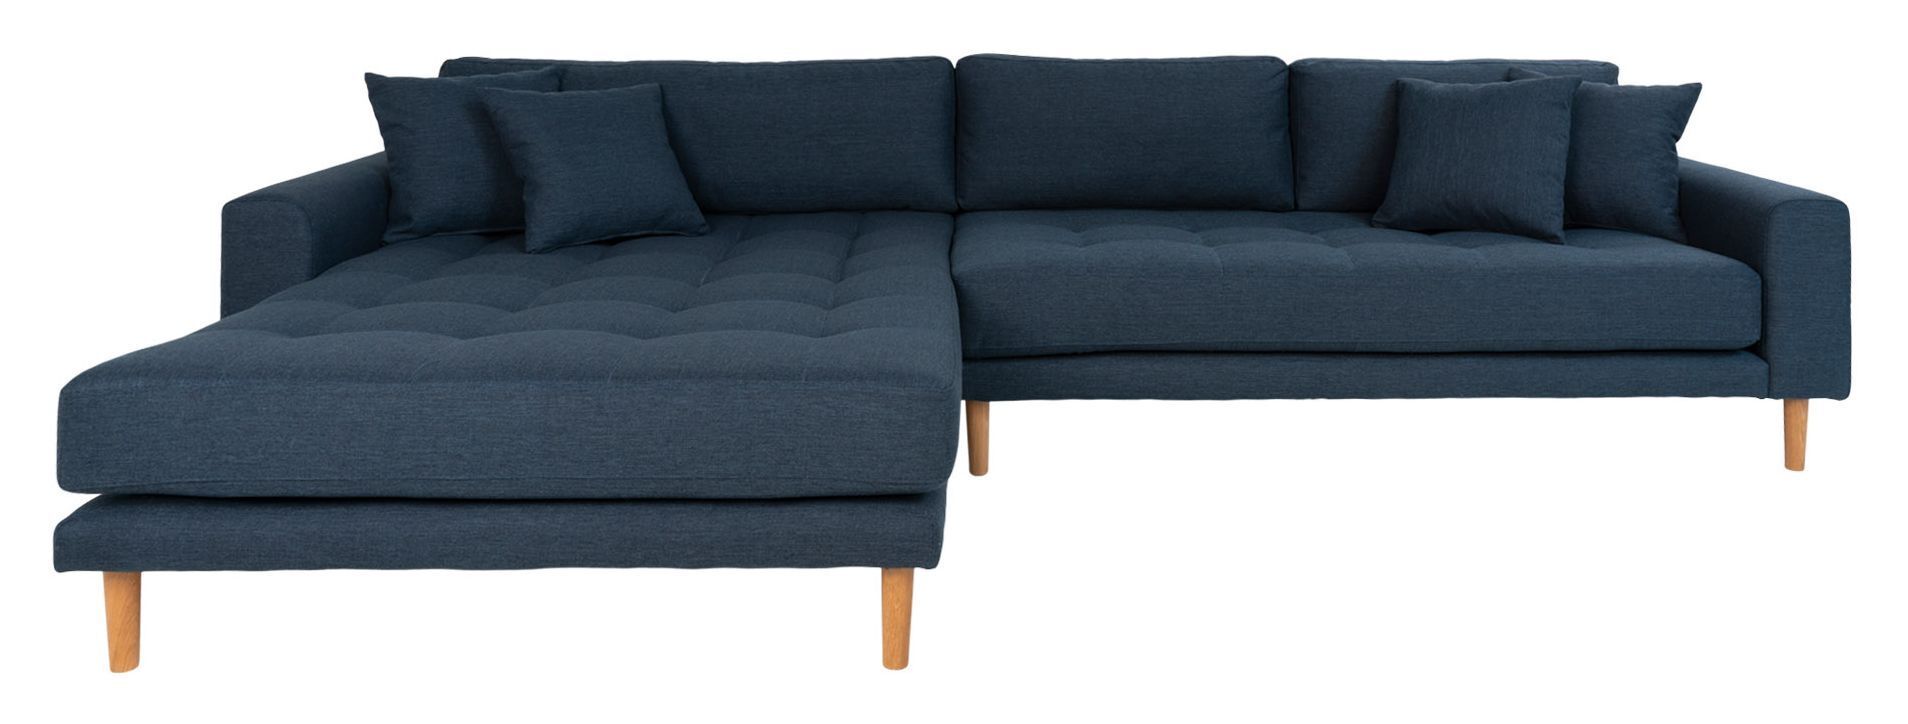 House Nordic Lido Lounge Sofa venstrevendt sjeselong - Mørkeblå   Unoliving